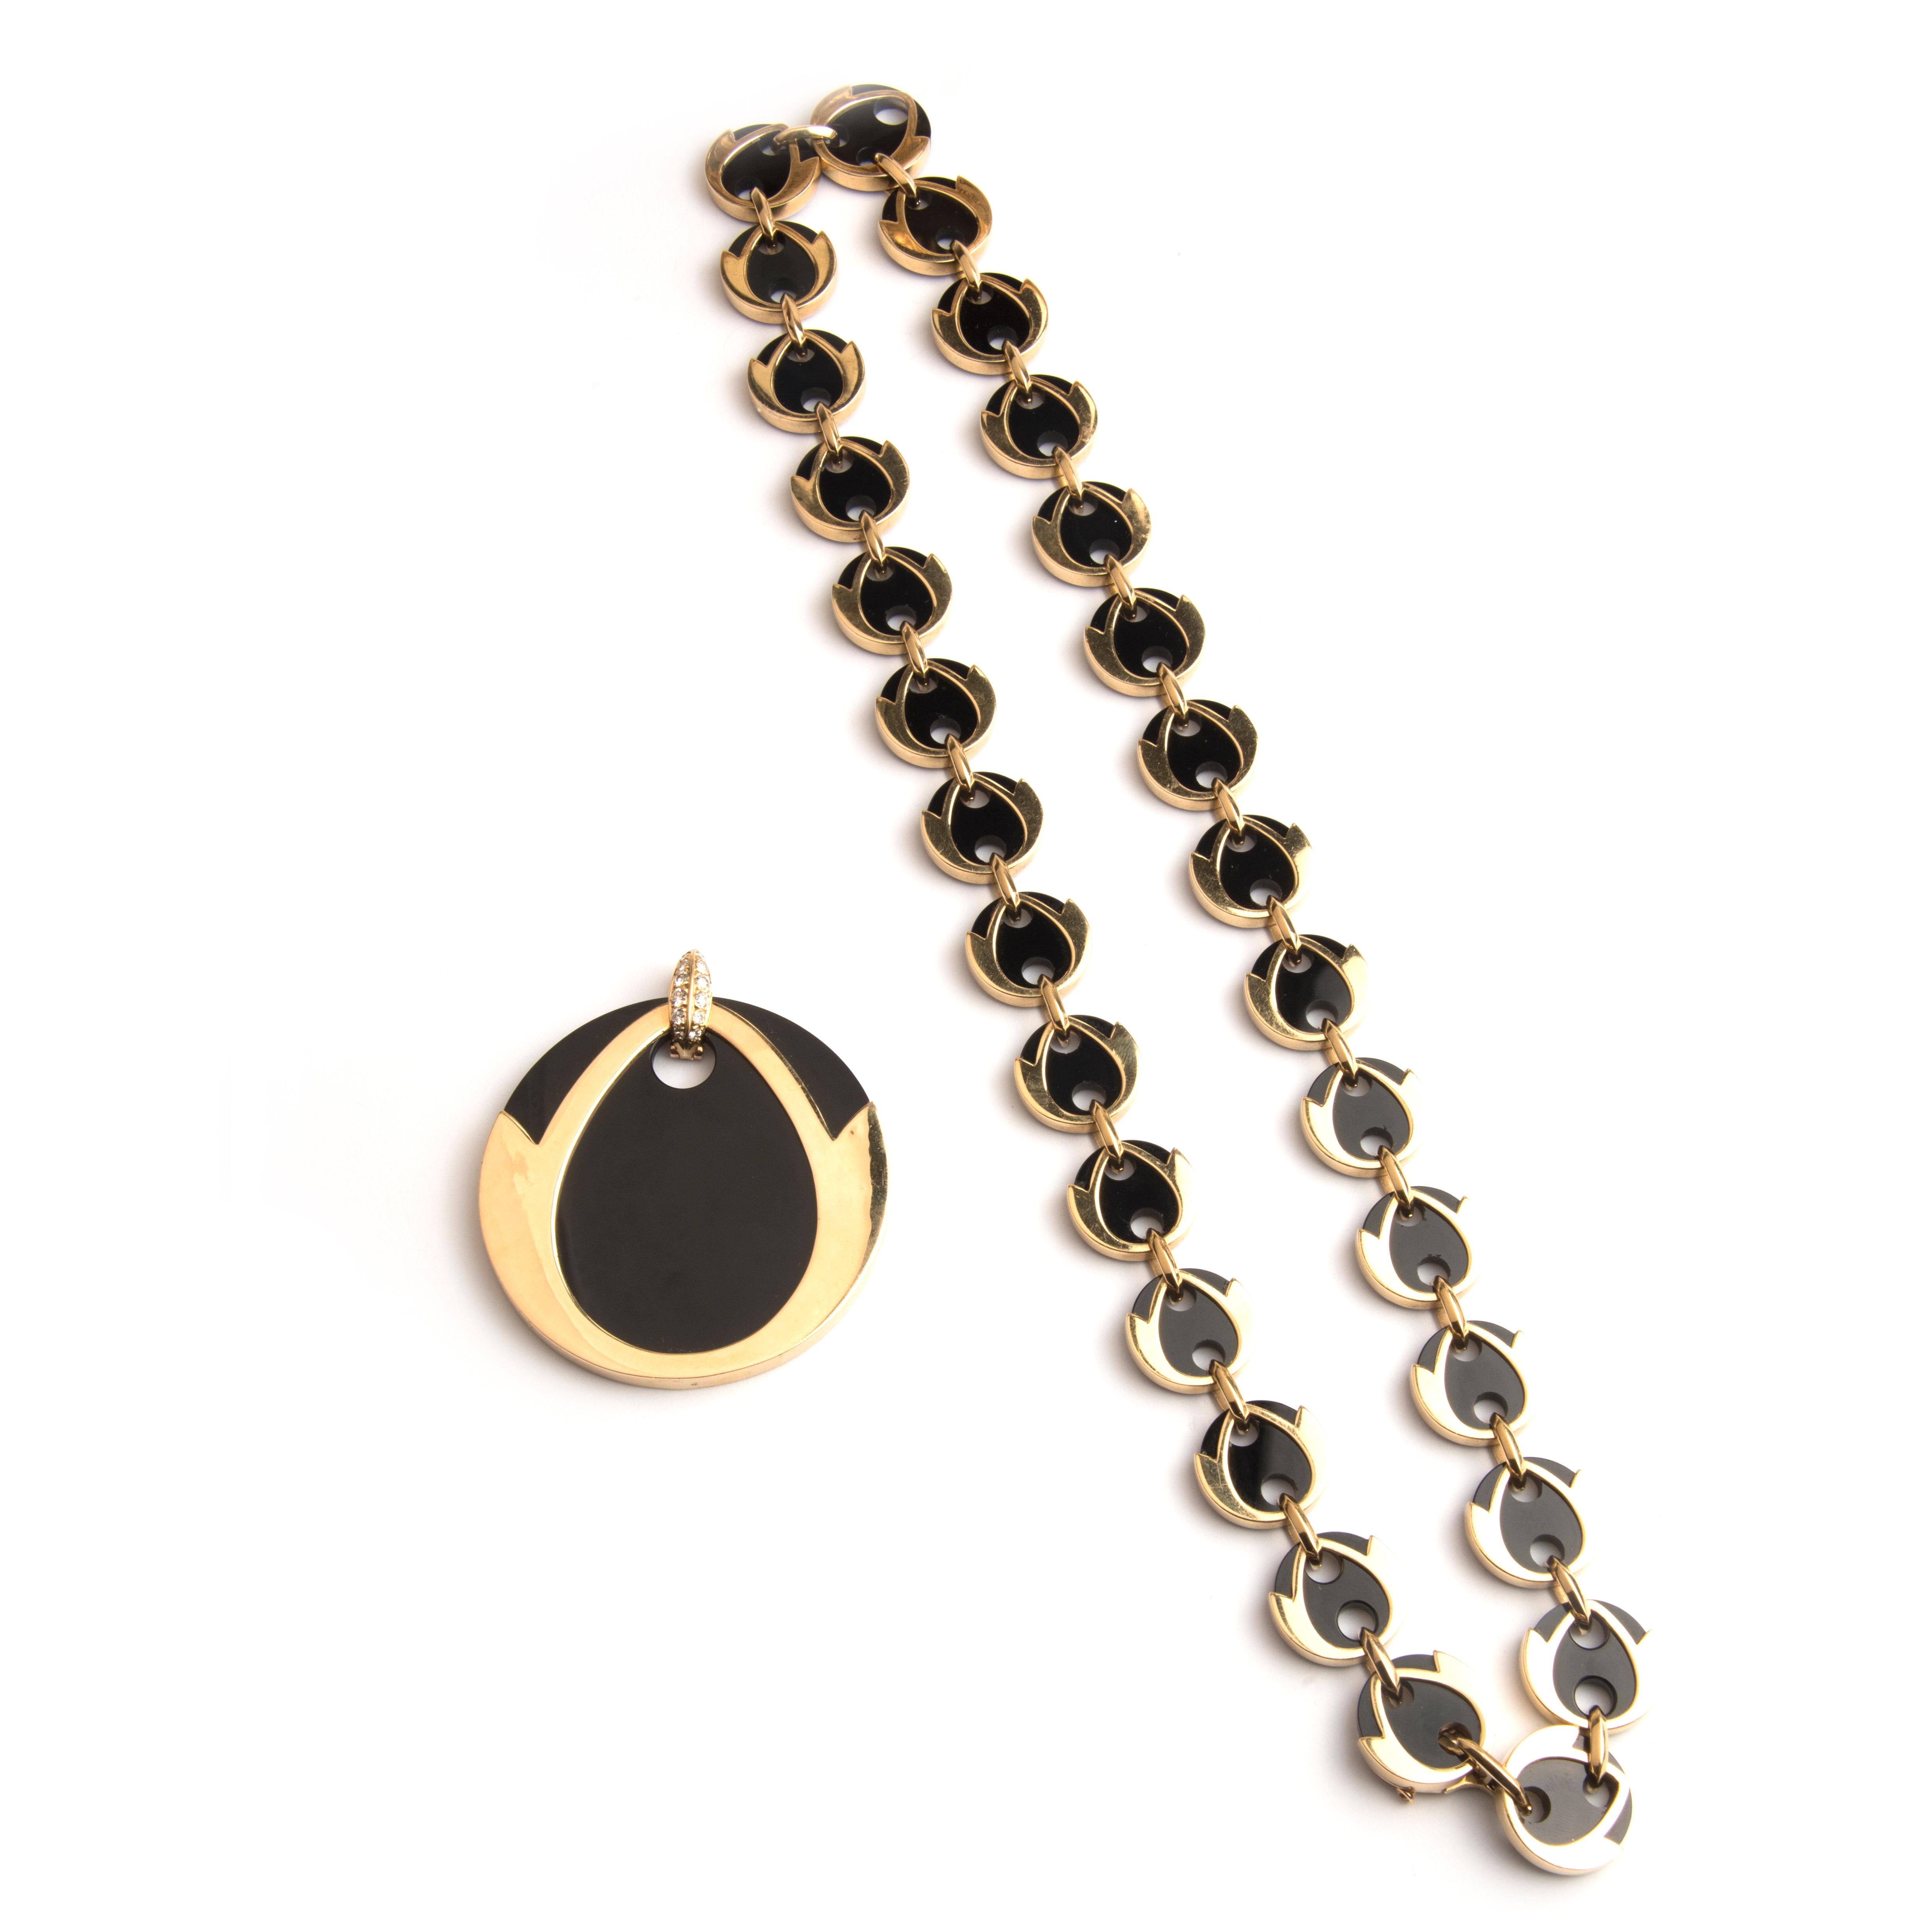 Boucheron 18 Karat Gold Diamond and Onyx Bracelet and Necklace Parure For Sale 1